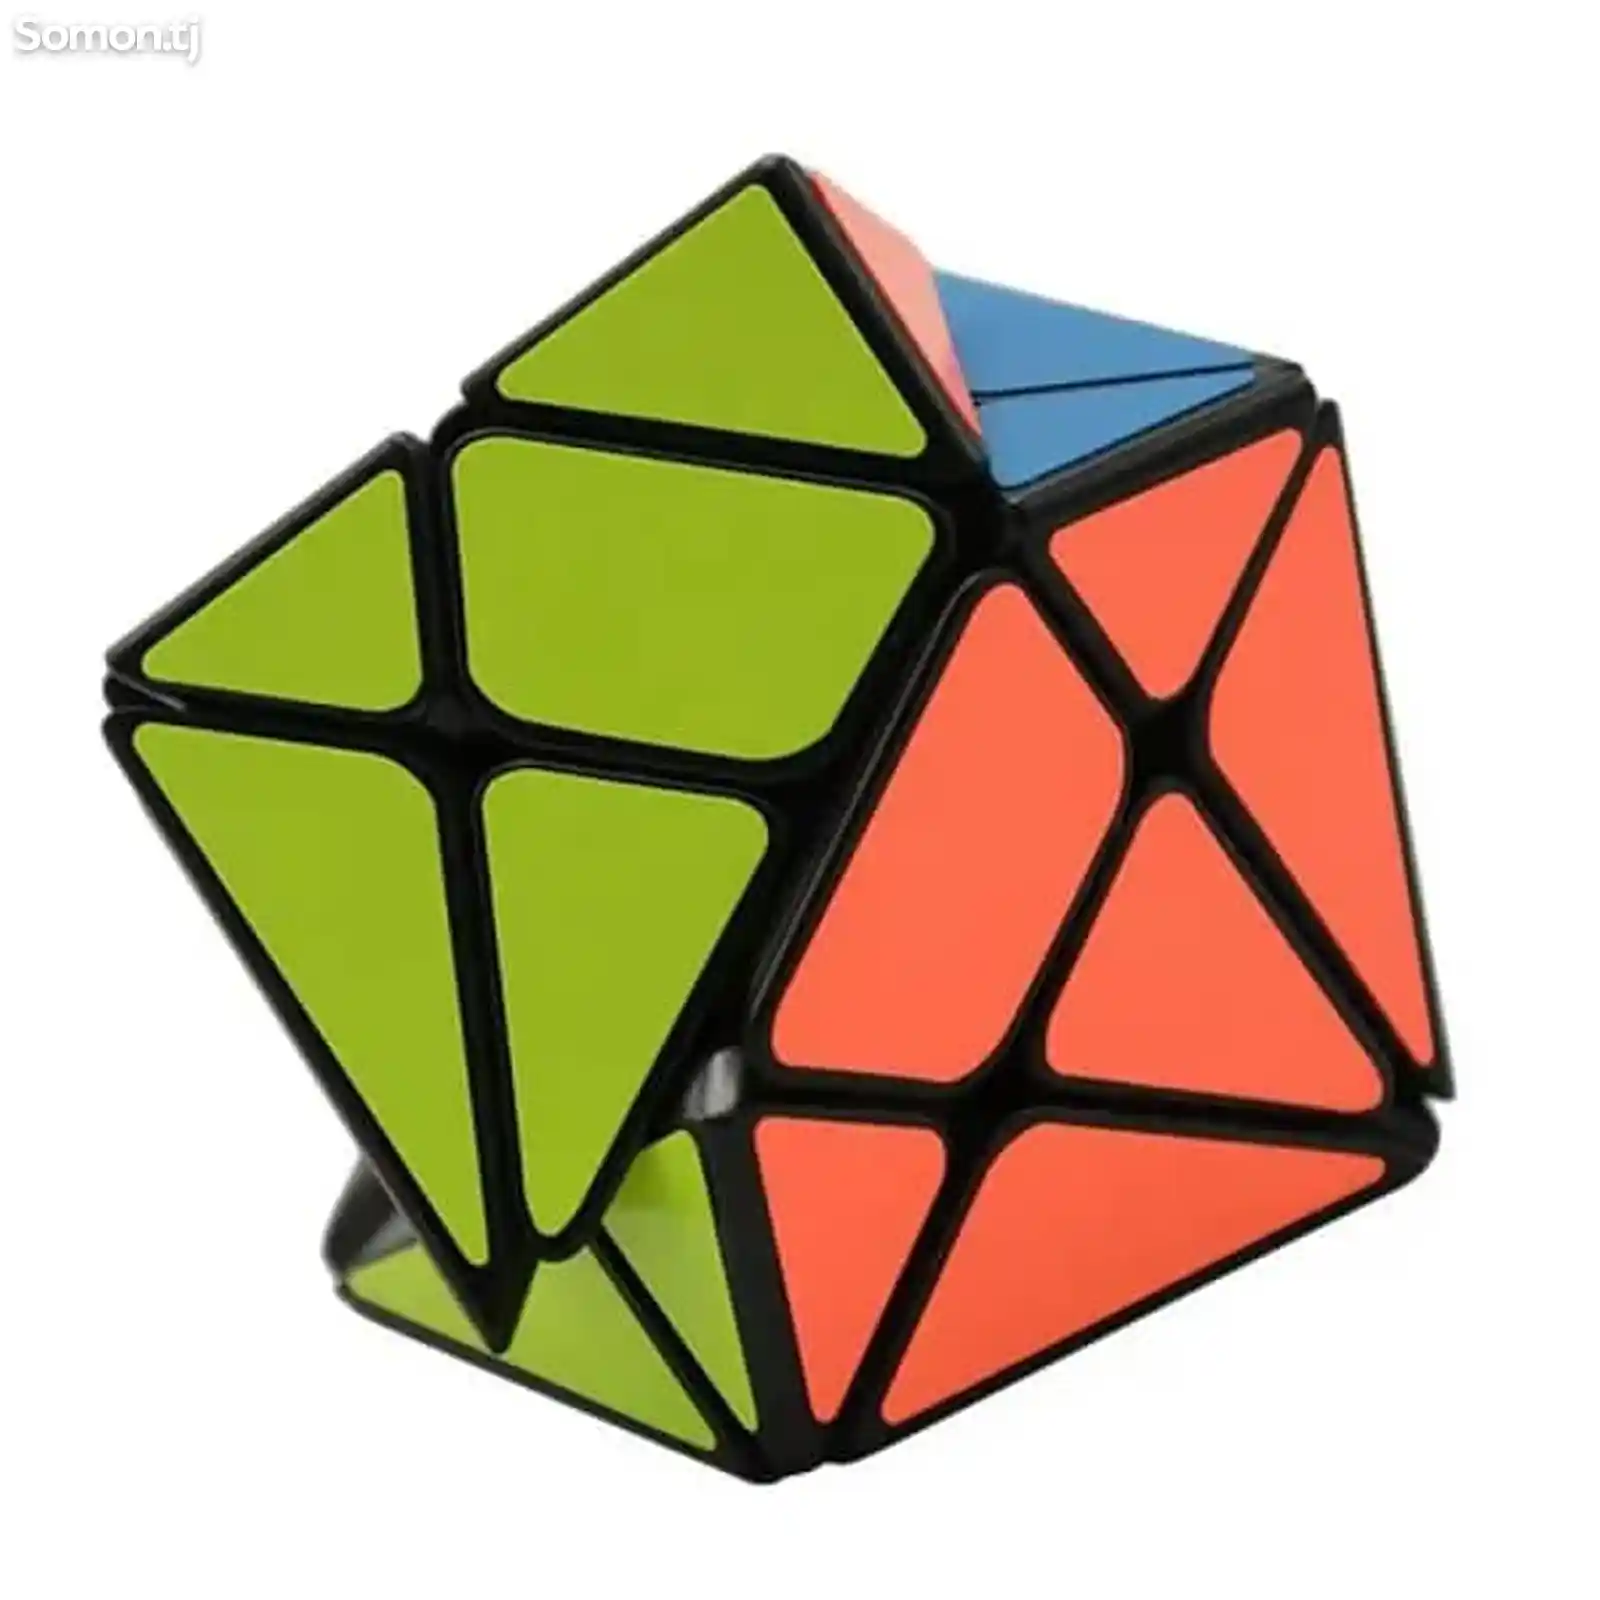 Аксис куб кубика Рубика, Axis cube-5